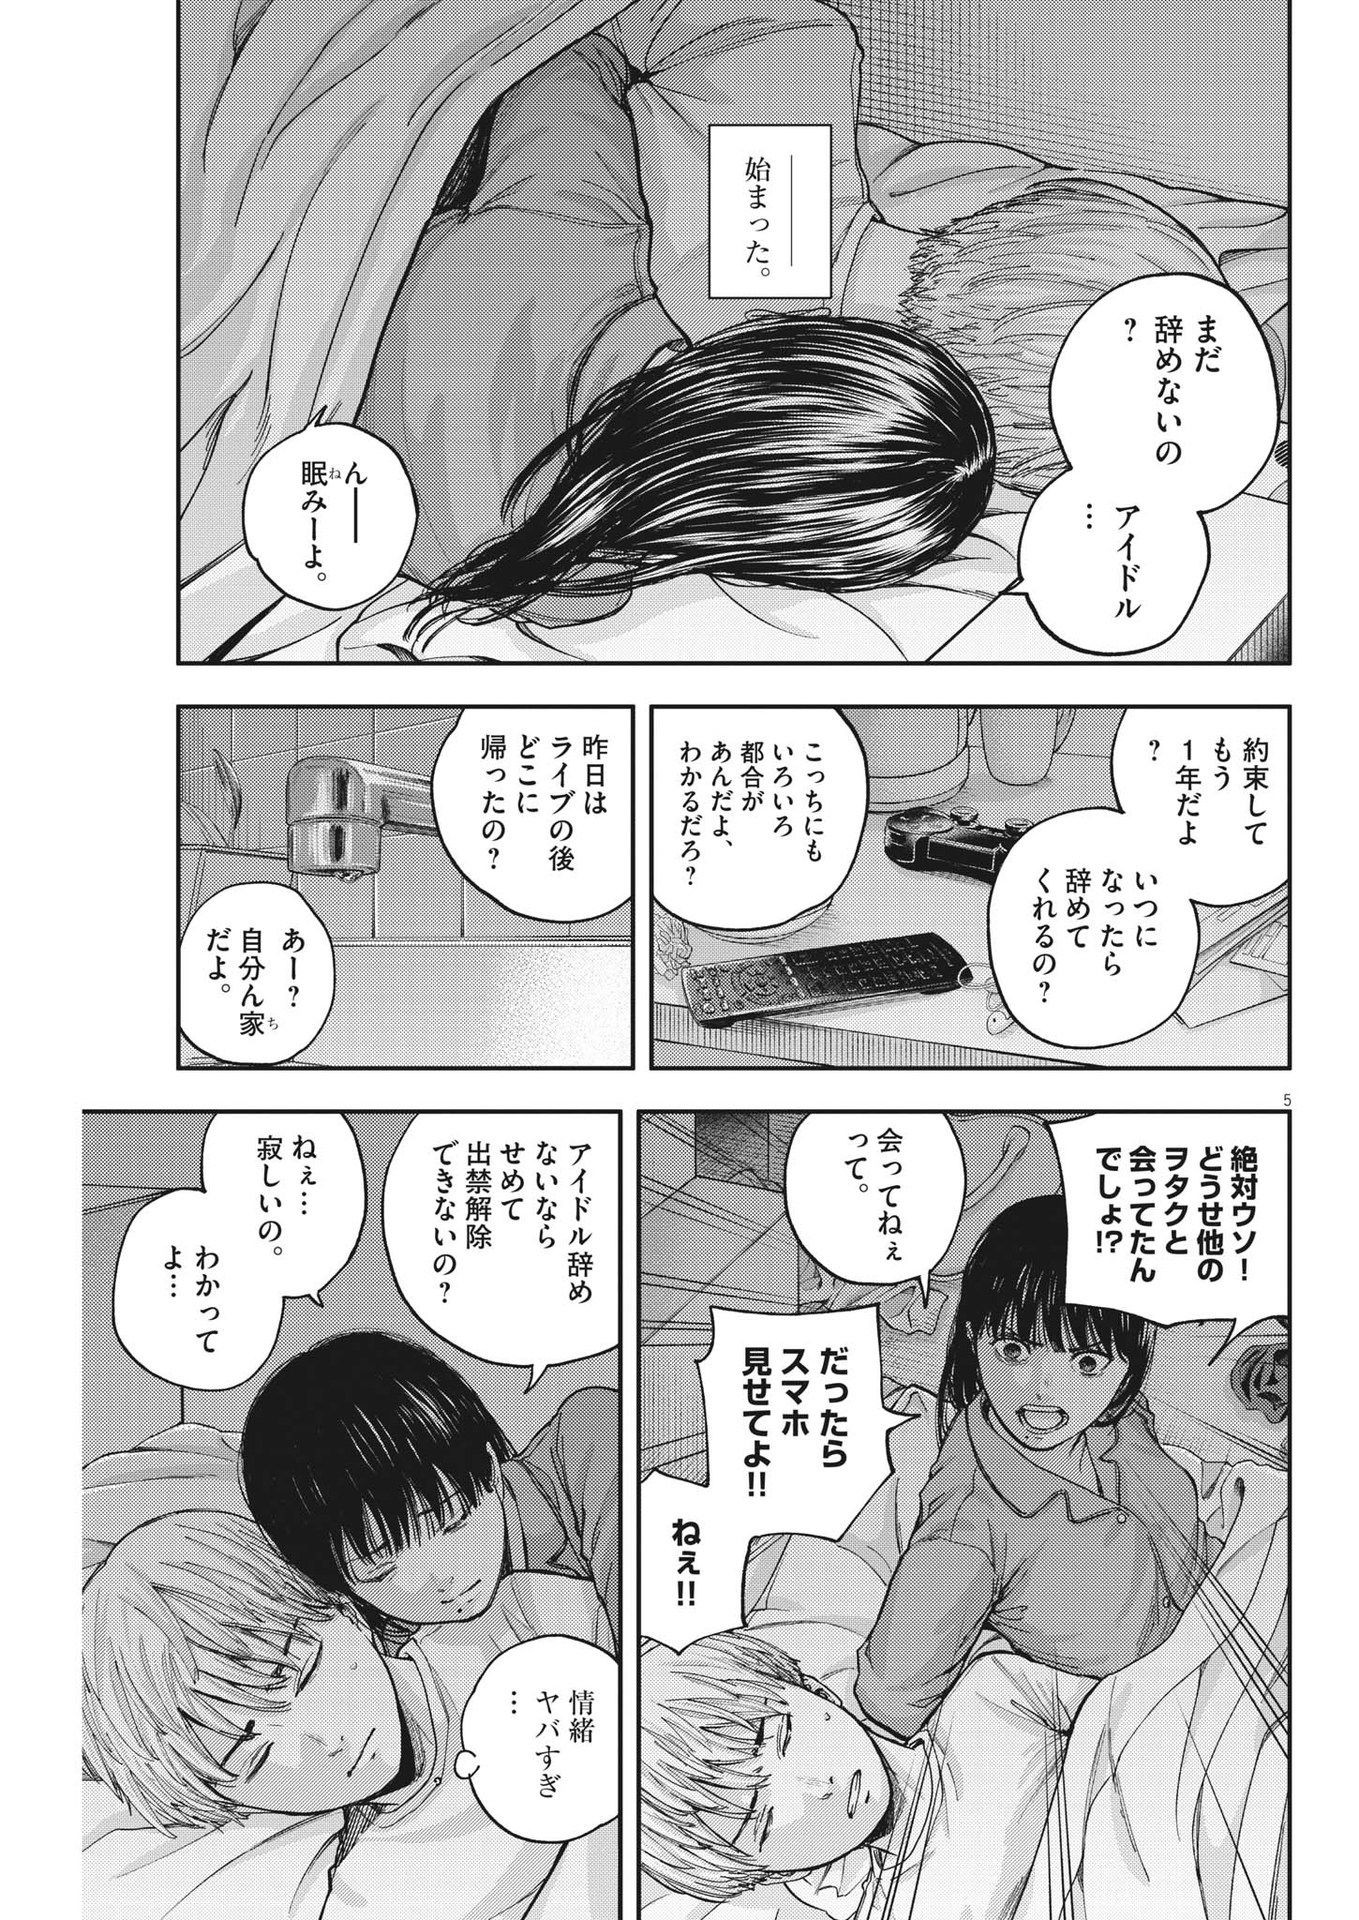 Yumenashi-sensei no Shinroshidou - Chapter 16 - Page 5